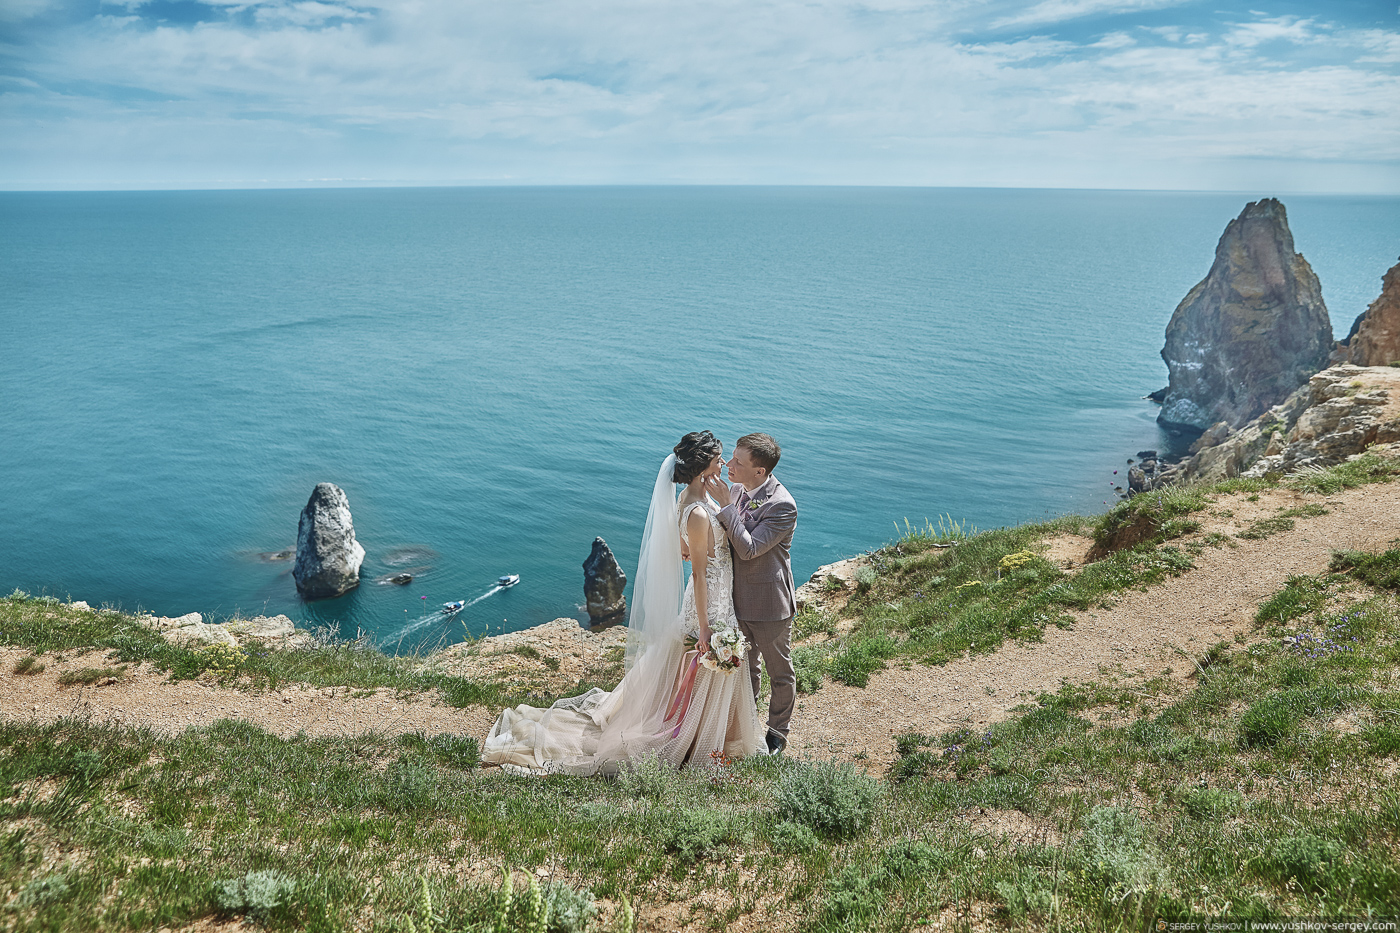 Anastasiya and Yuriy. Wedding in Crimea 2020.